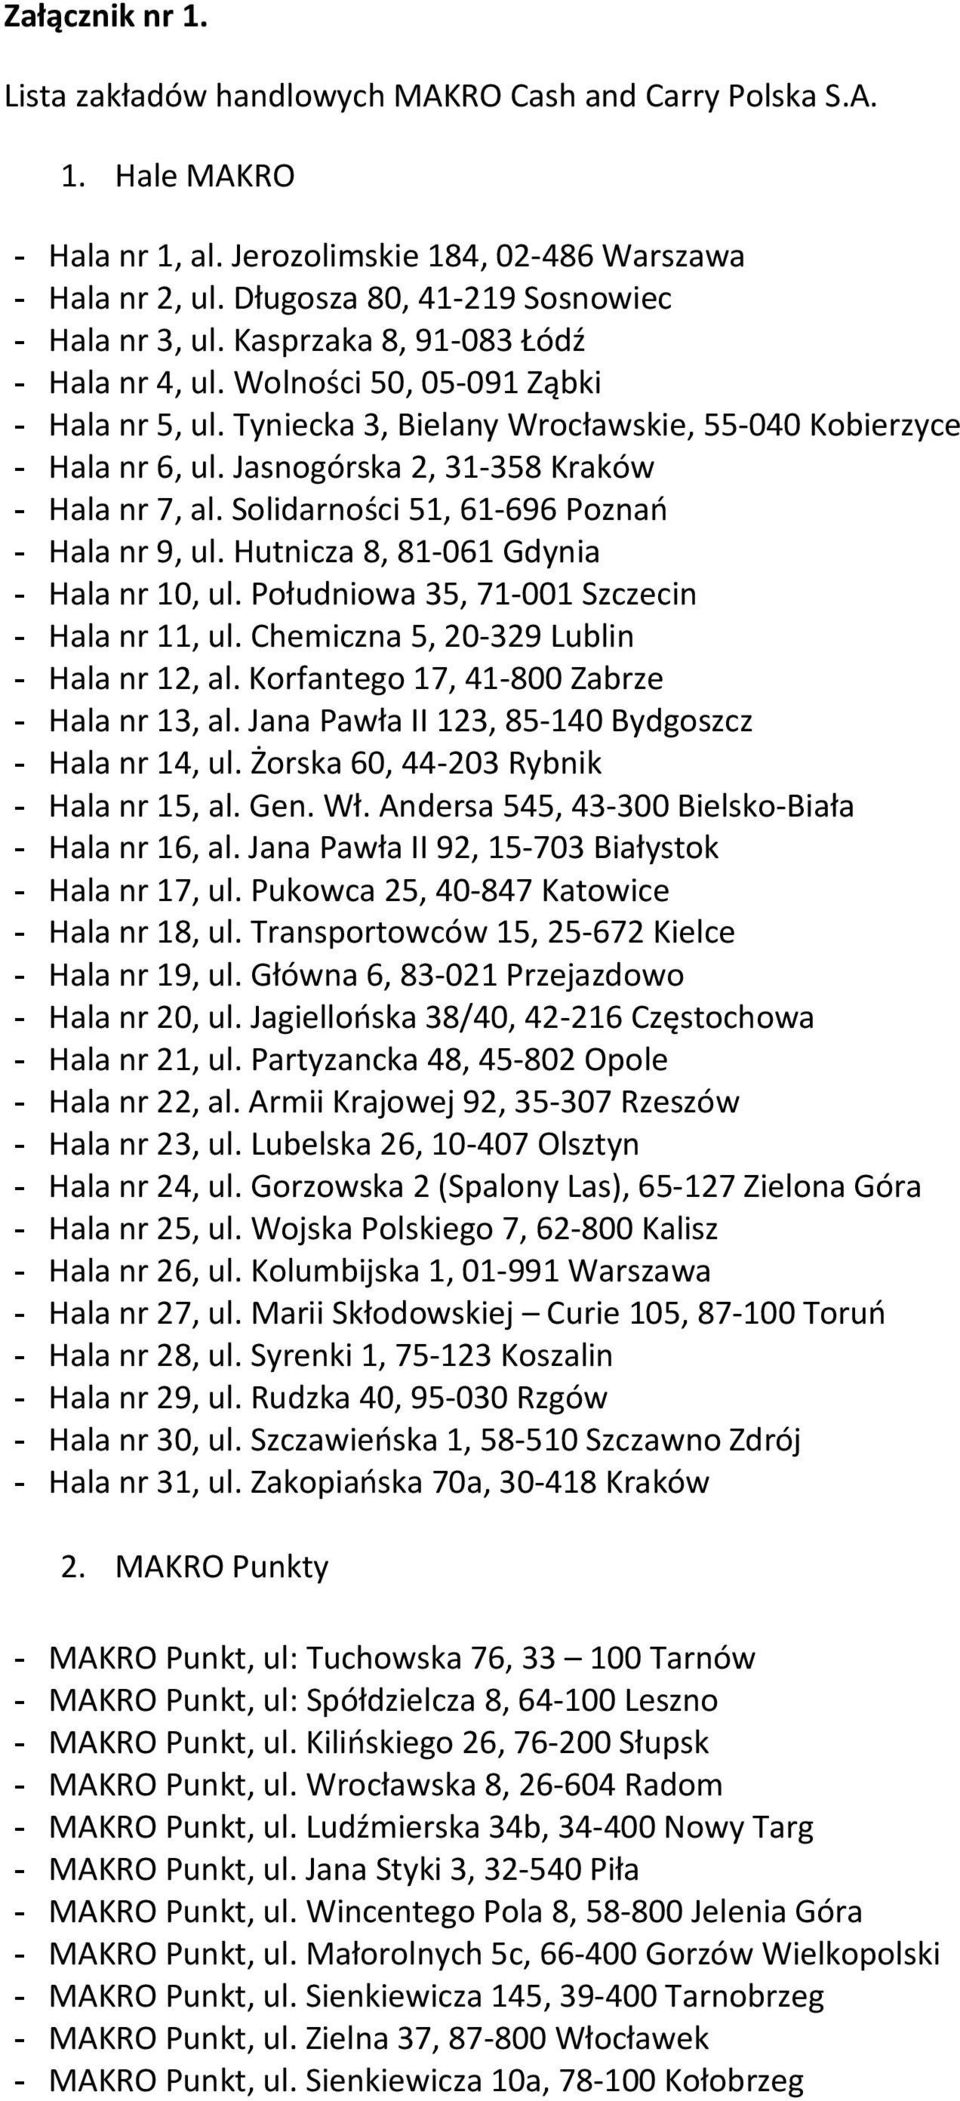 Jasnogórska 2, 31-358 Kraków - Hala nr 7, al. Solidarności 51, 61-696 Poznań - Hala nr 9, ul. Hutnicza 8, 81-061 Gdynia - Hala nr 10, ul. Południowa 35, 71-001 Szczecin - Hala nr 11, ul.